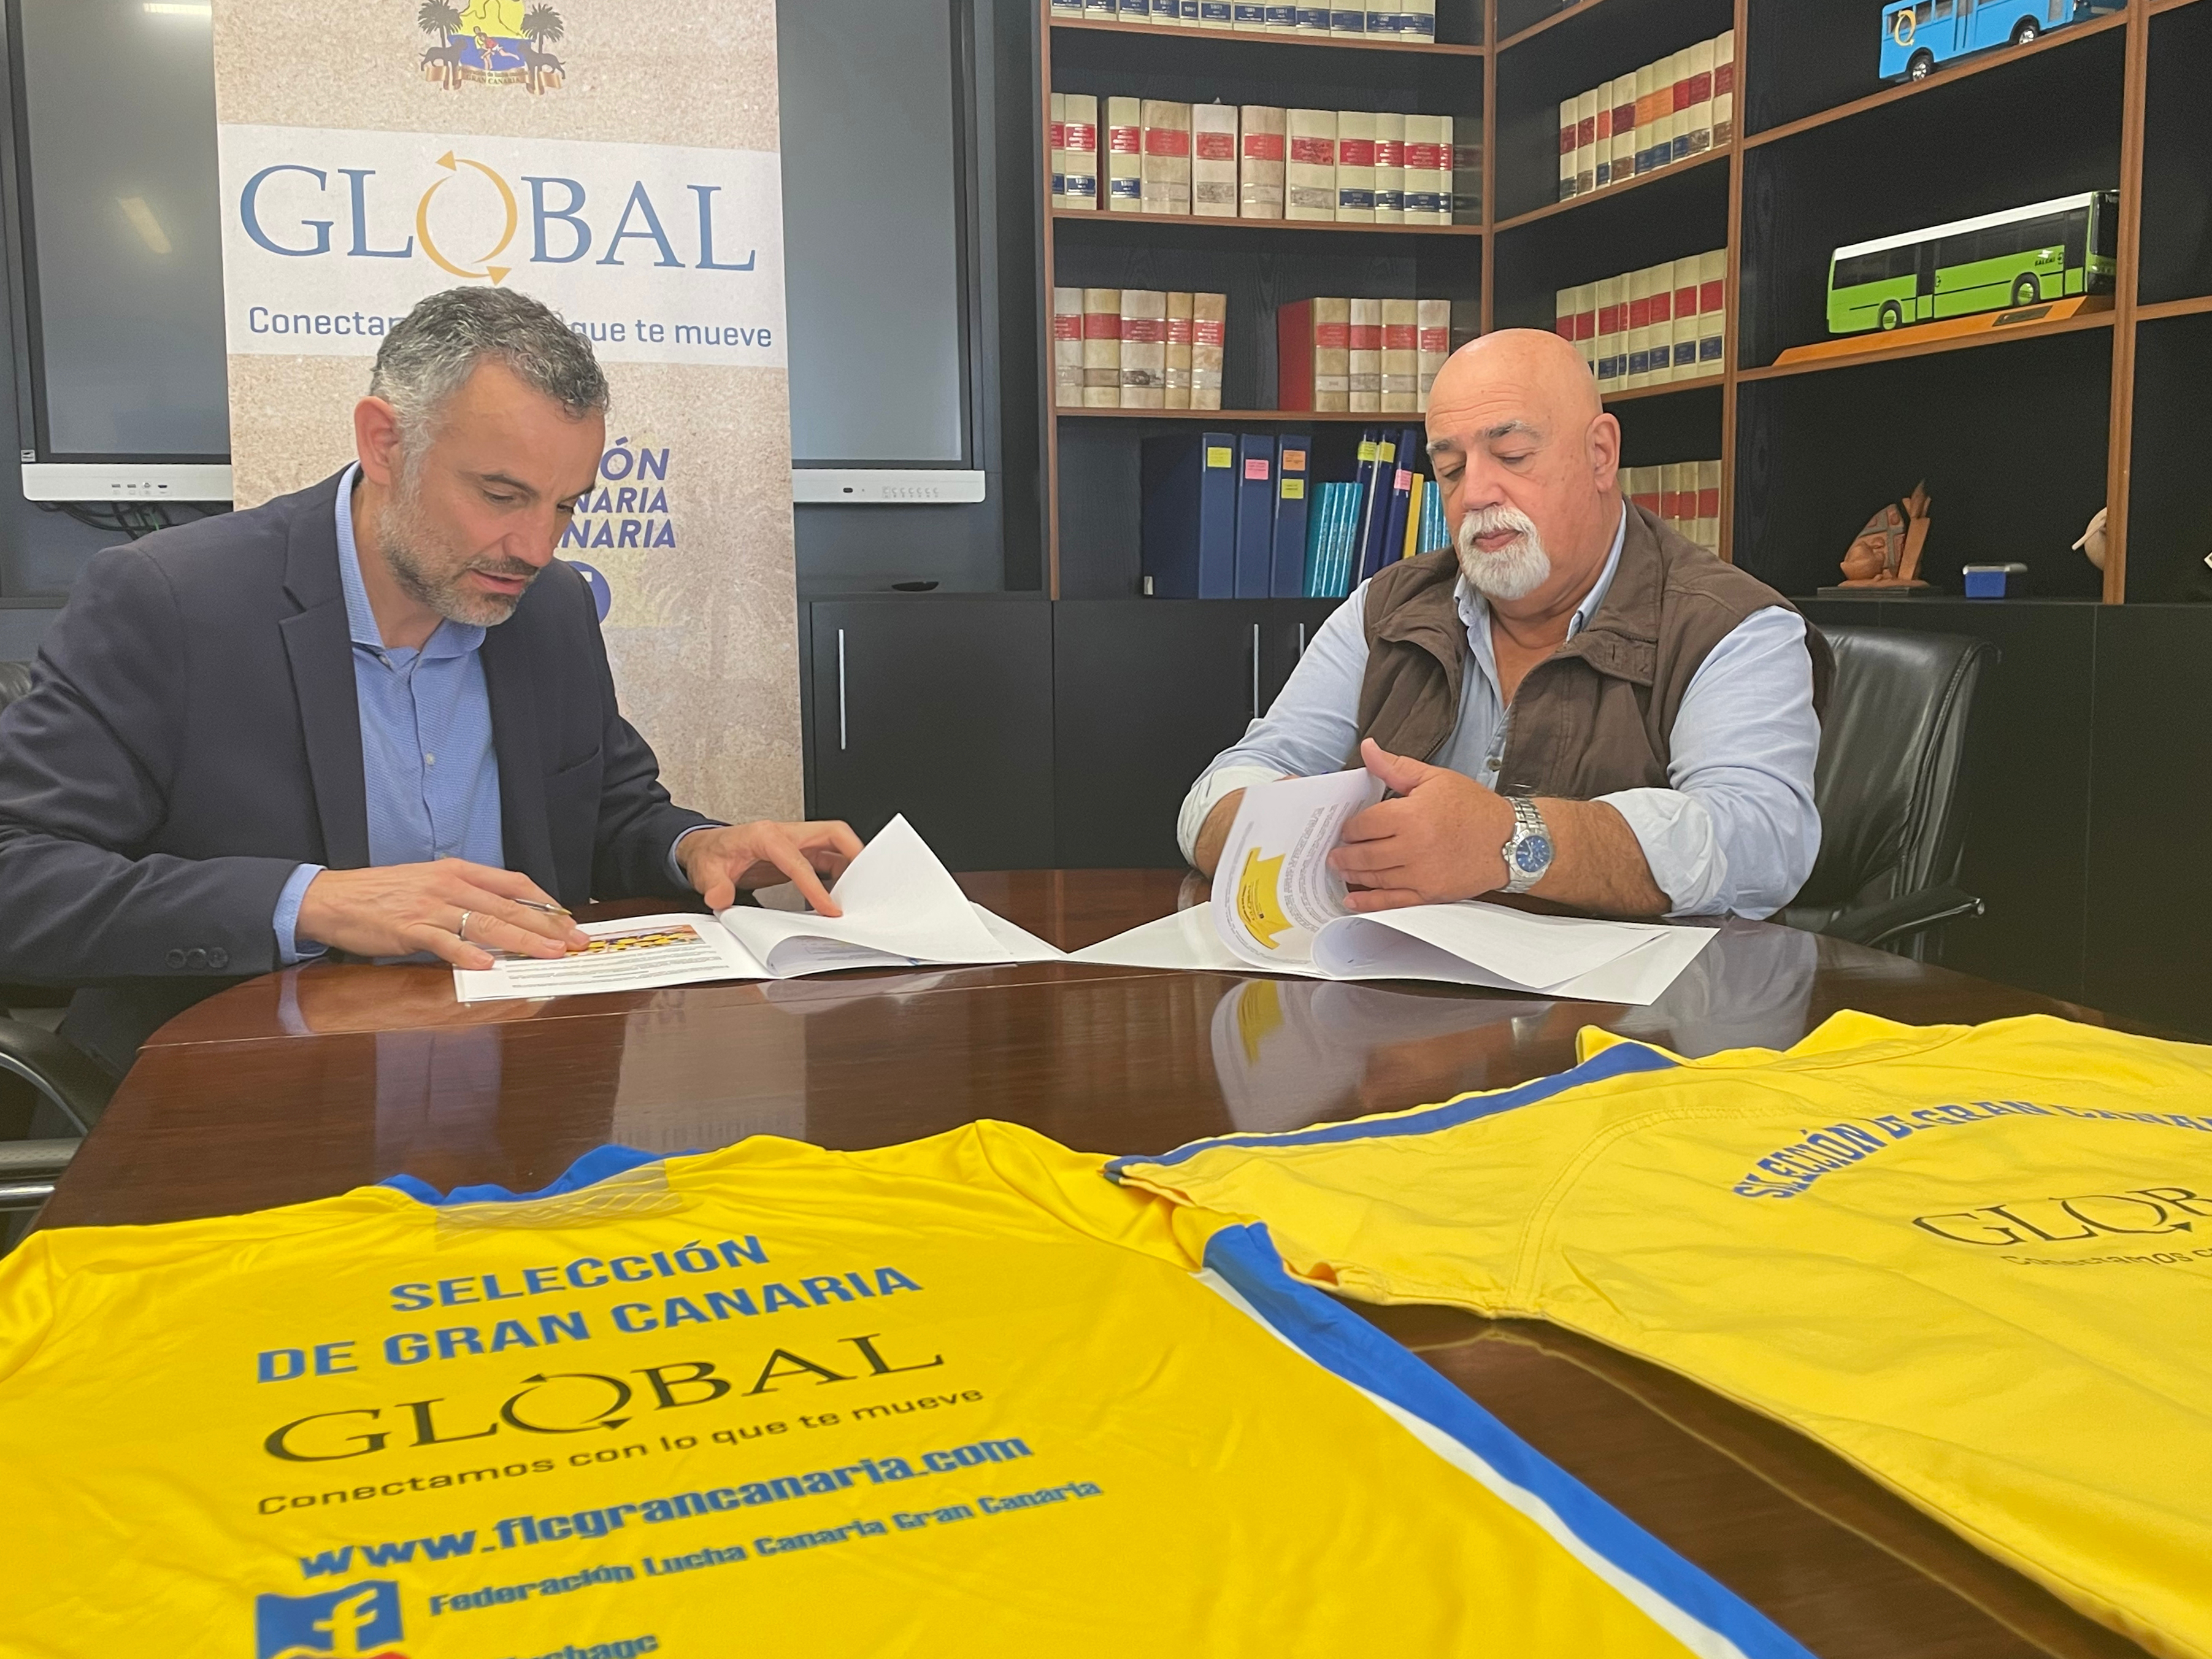 Firma del convenio entre Global y Federación de Lucha Canaria 